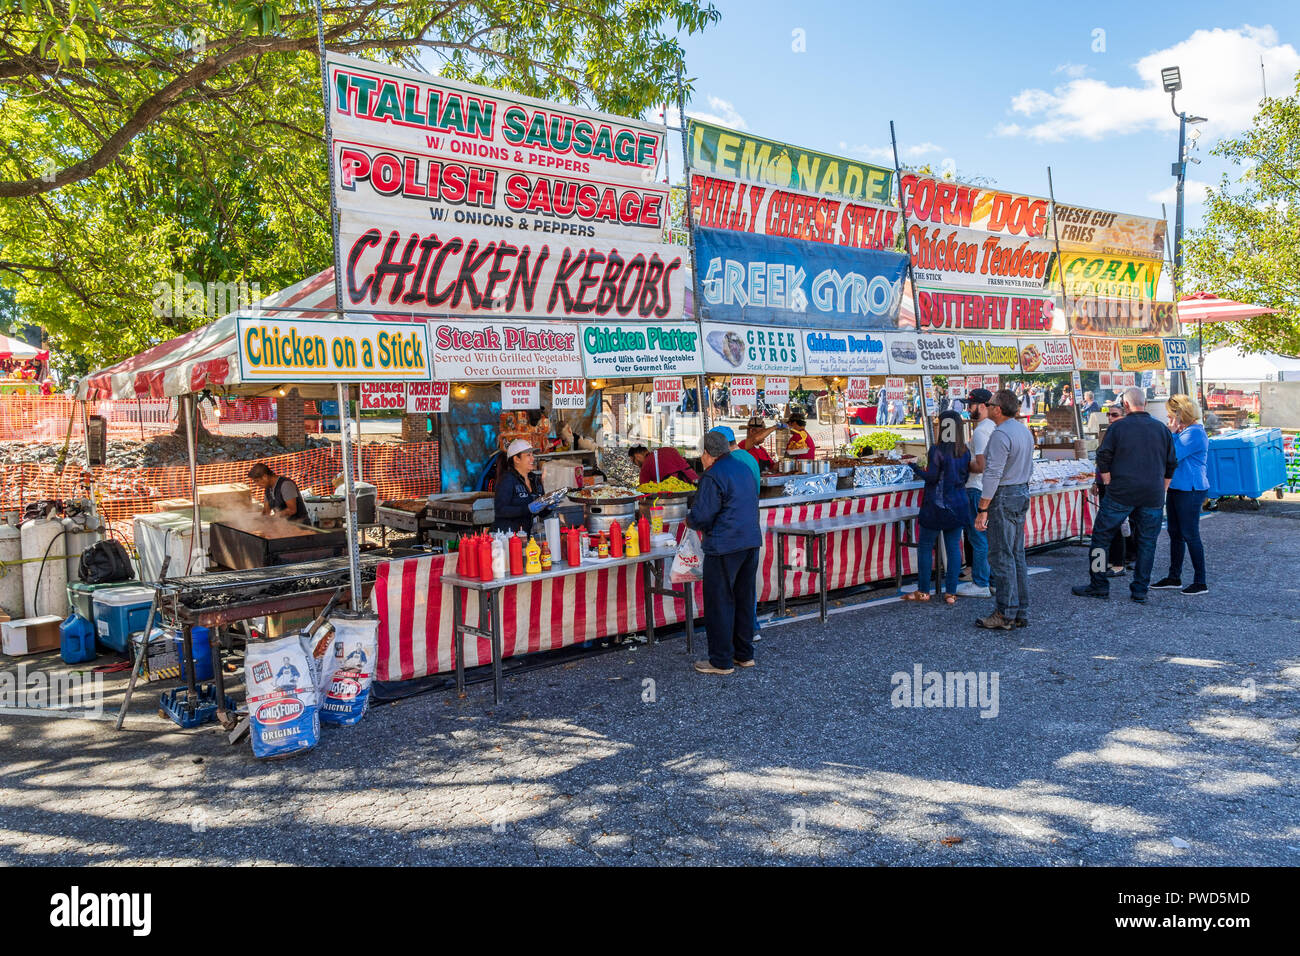 HICKORY, NC, Stati Uniti d'America-10/14/18: una concessione stand presso il locale fall festival offre Itialian salsiccia e pollo kebobs. Supporto clienti in linea. Foto Stock